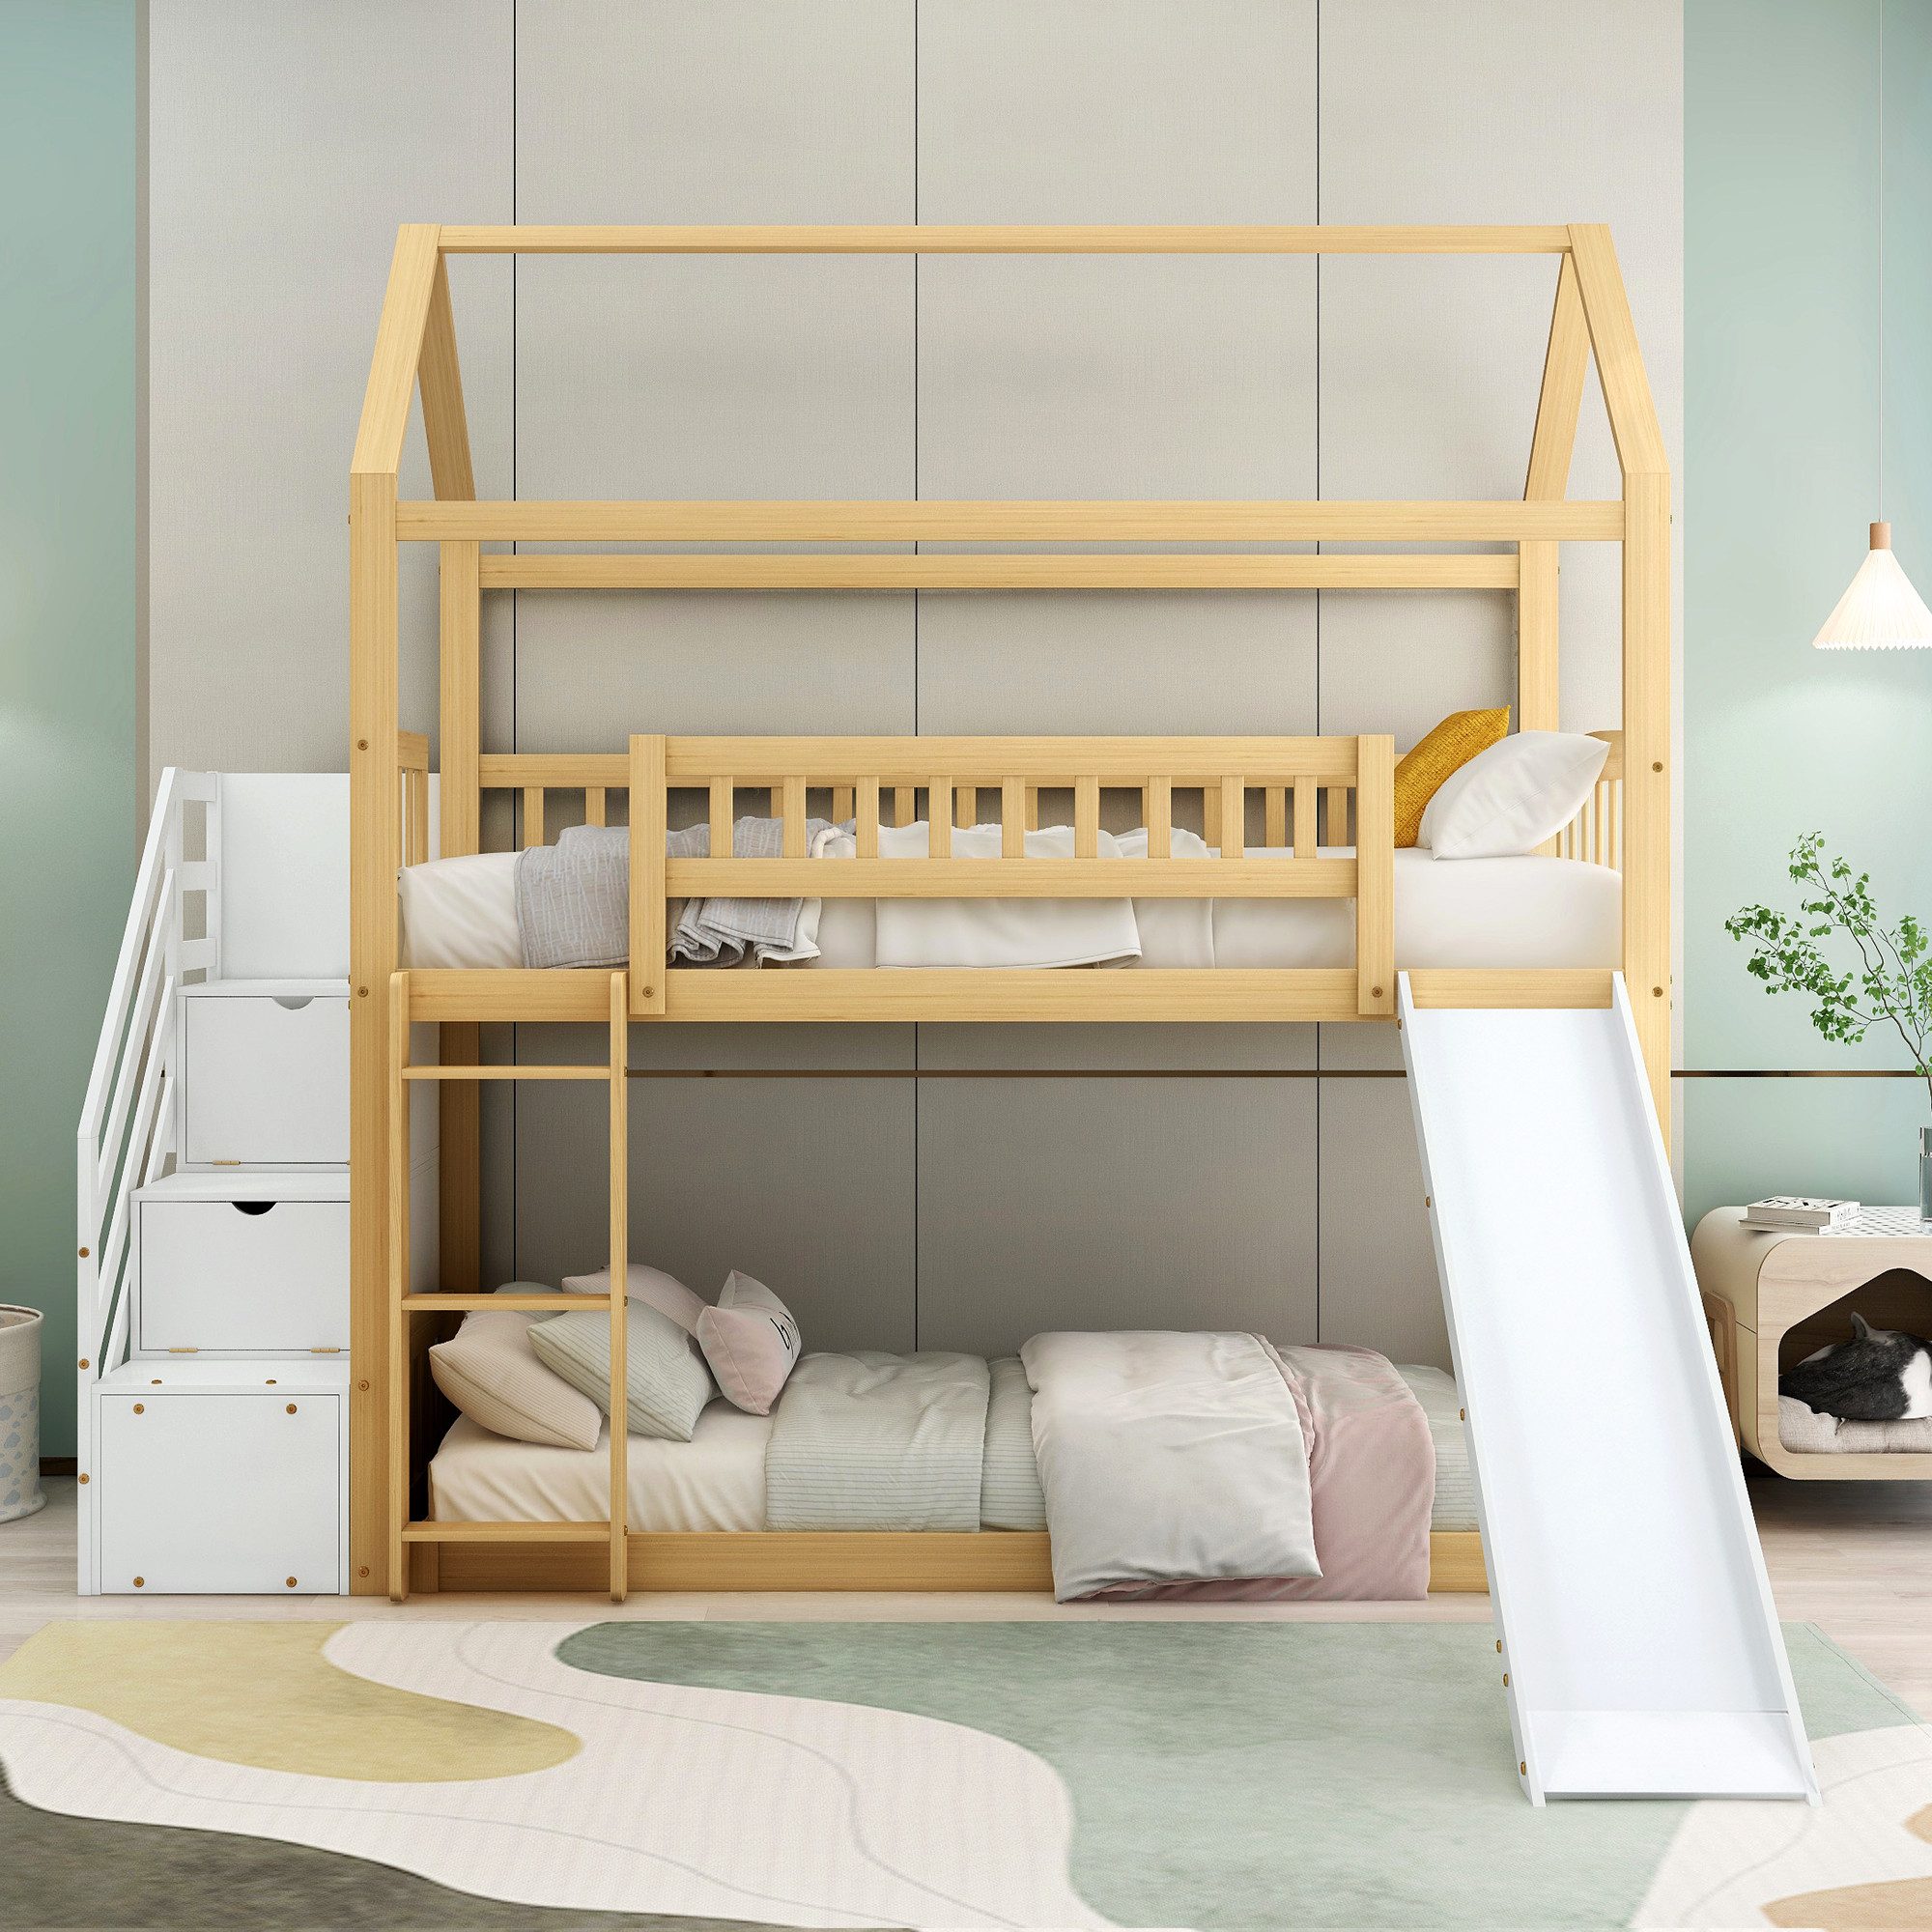 IDEASY Etagenbett Kinderbett, Jugendbett, 90 x 200 cm, sturzsicher, (dreistufige rechtwinklige Treppe, Heimbett mit Rutsche, Holzrahmen), natürliche Farbe + Weiß, einfach zu montieren, leicht zu reinigen